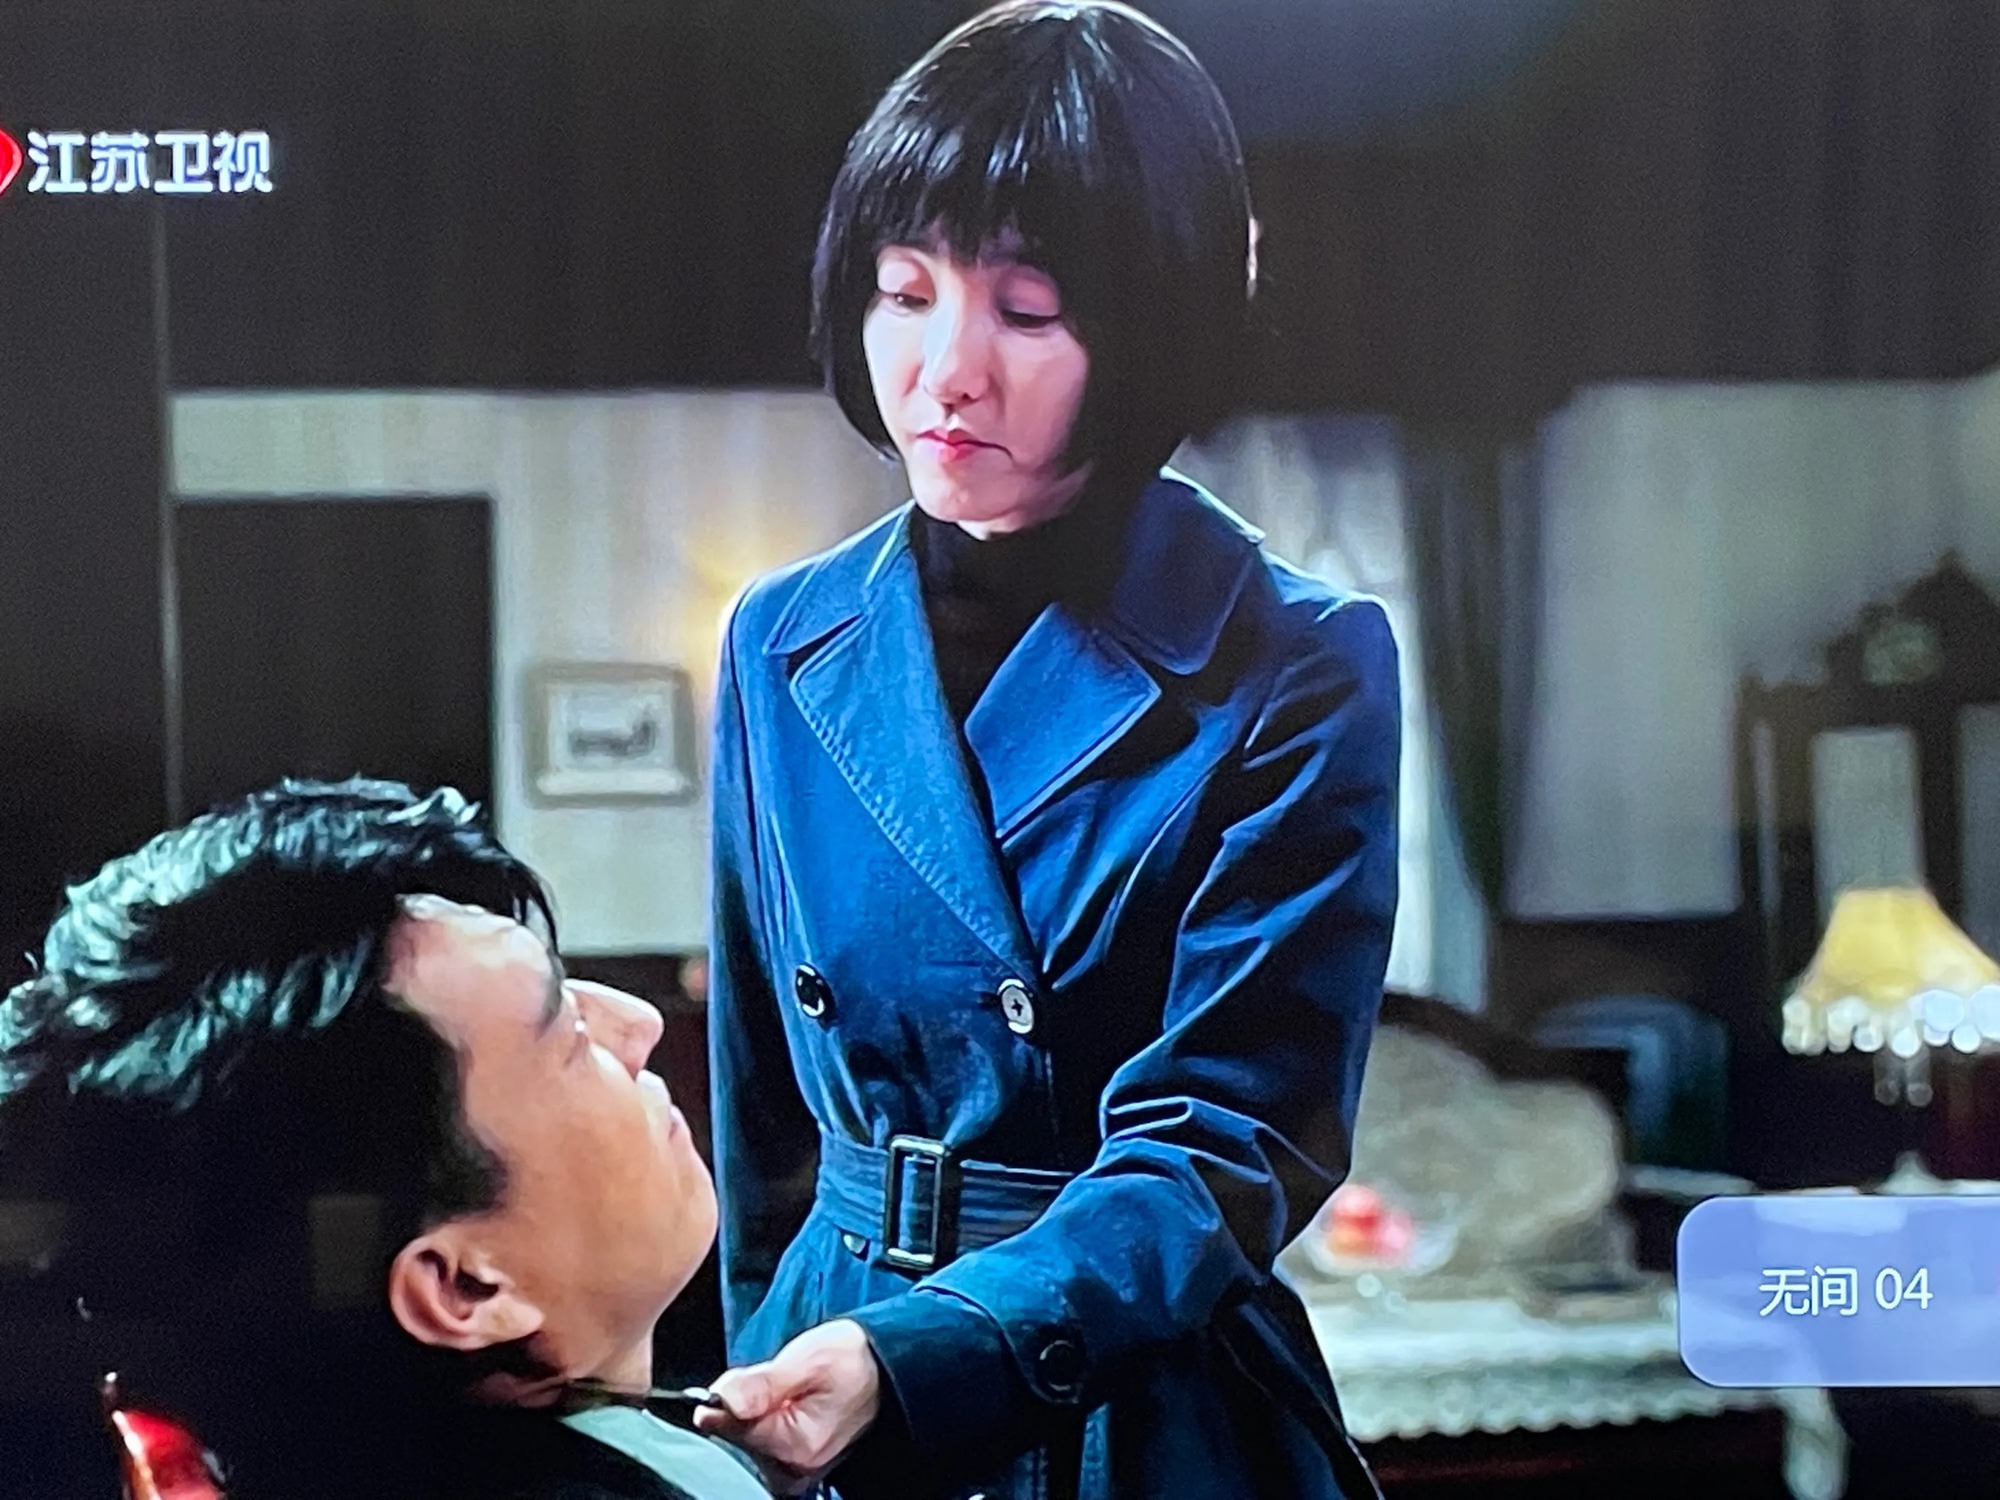 'Nữ thần mặt mộc' bắt chước Song Hye Kyo nhưng thất bại nặng nề, còn bị chê 'diễn như chưa tỉnh ngủ' - Ảnh 4.